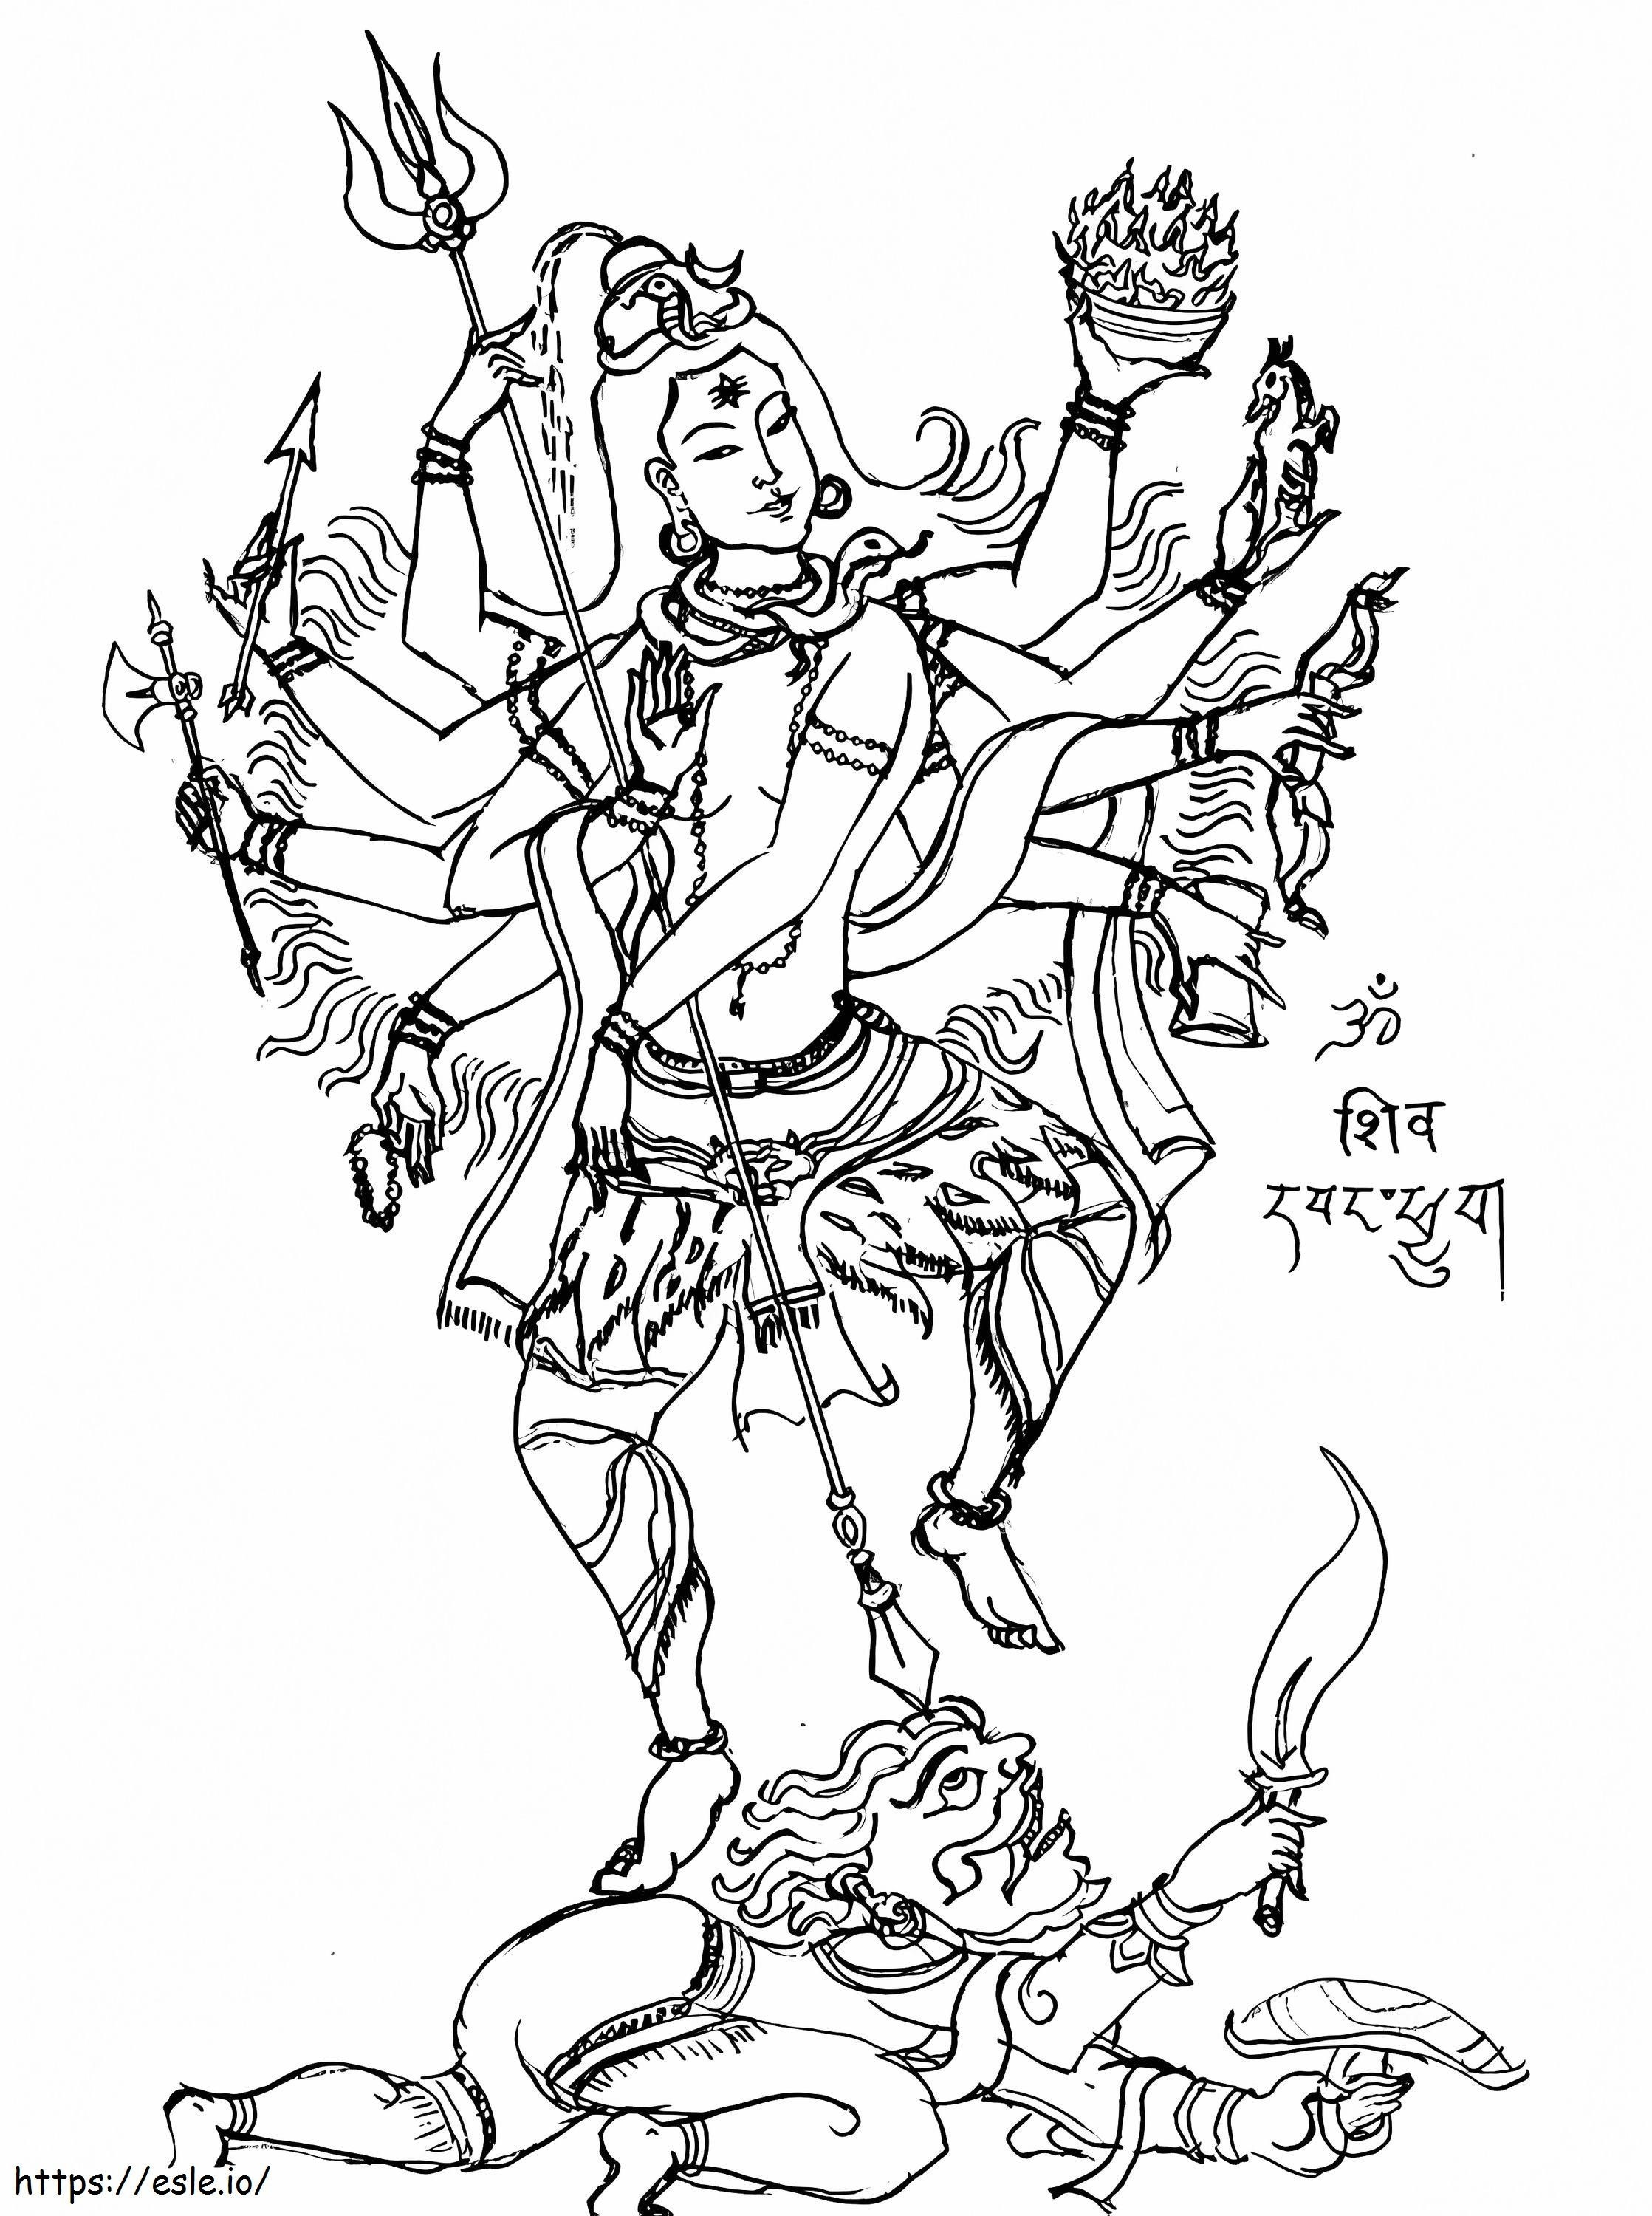 Signore Shiva 2 da colorare